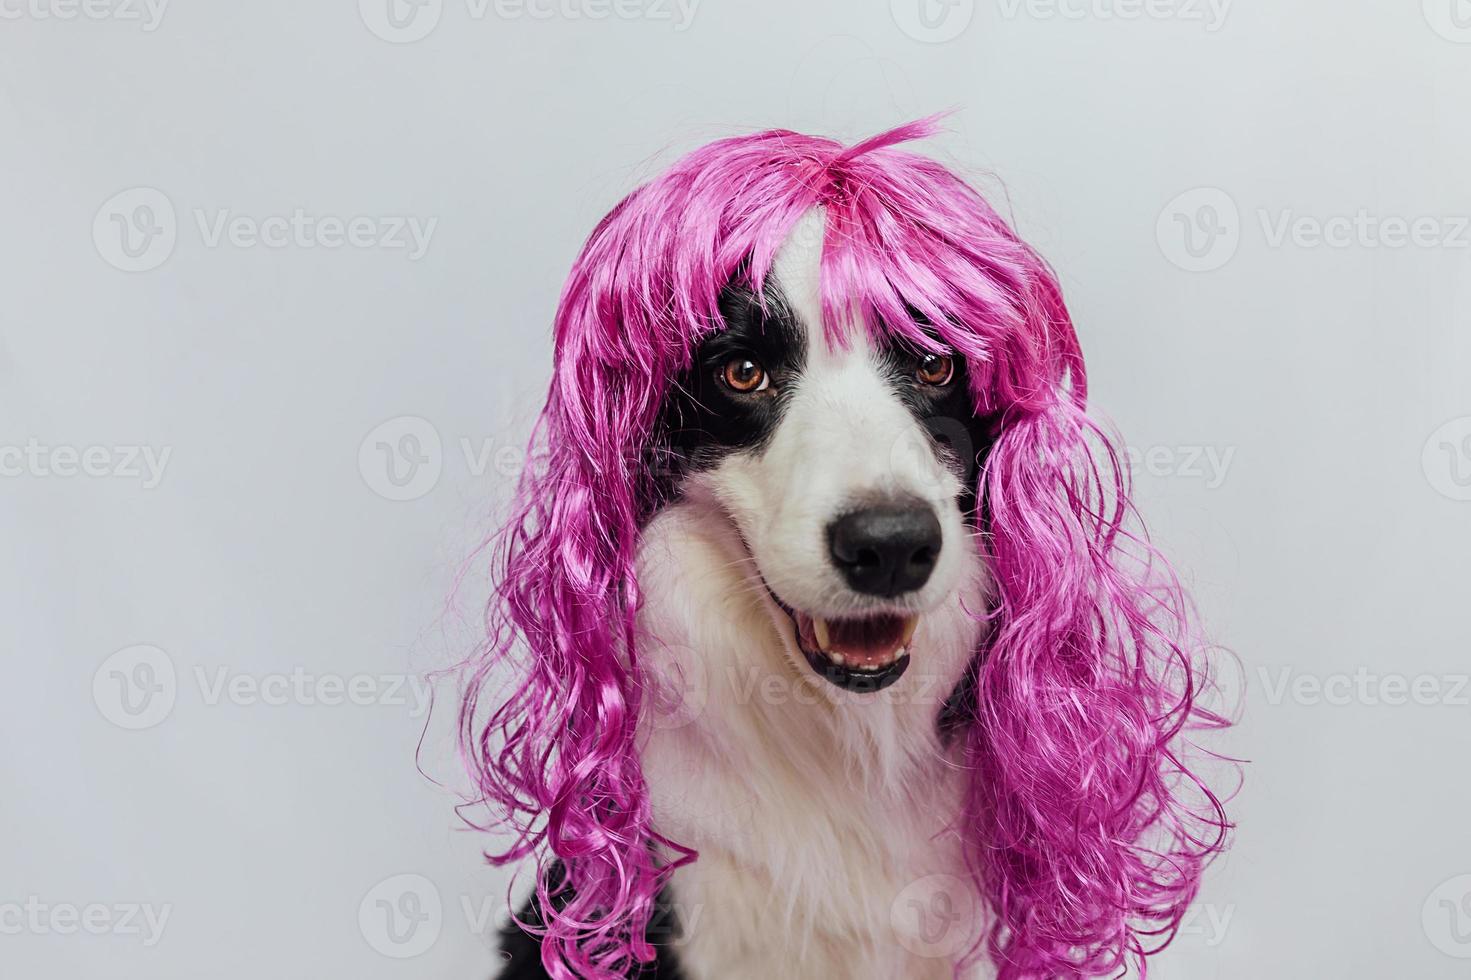 huisdier hond border collie dragen kleurrijke krullend lila pruik geïsoleerd op een witte achtergrond. grappige puppy in roze pruik in carnaval of halloween-feest. emotionele huisdier snuit. verzorging kapper kapper concept. foto